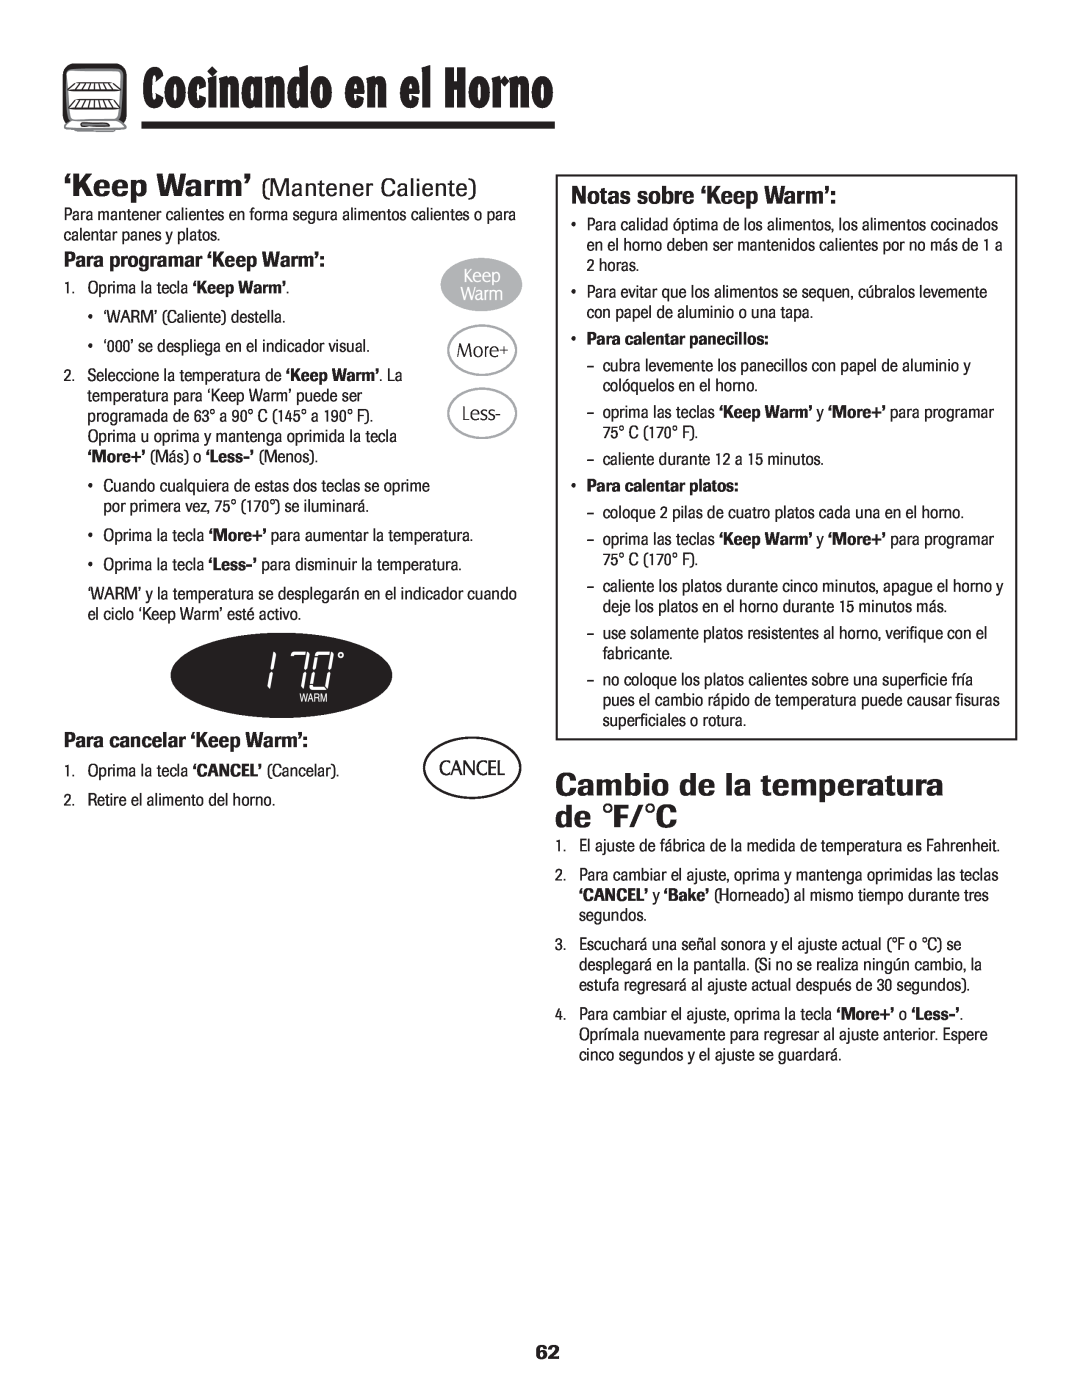 Maytag MES5752BAW manual Cambio de la temperatura de F/C, ‘Keep Warm’ Mantener Caliente, Notas sobre ‘Keep Warm’ 